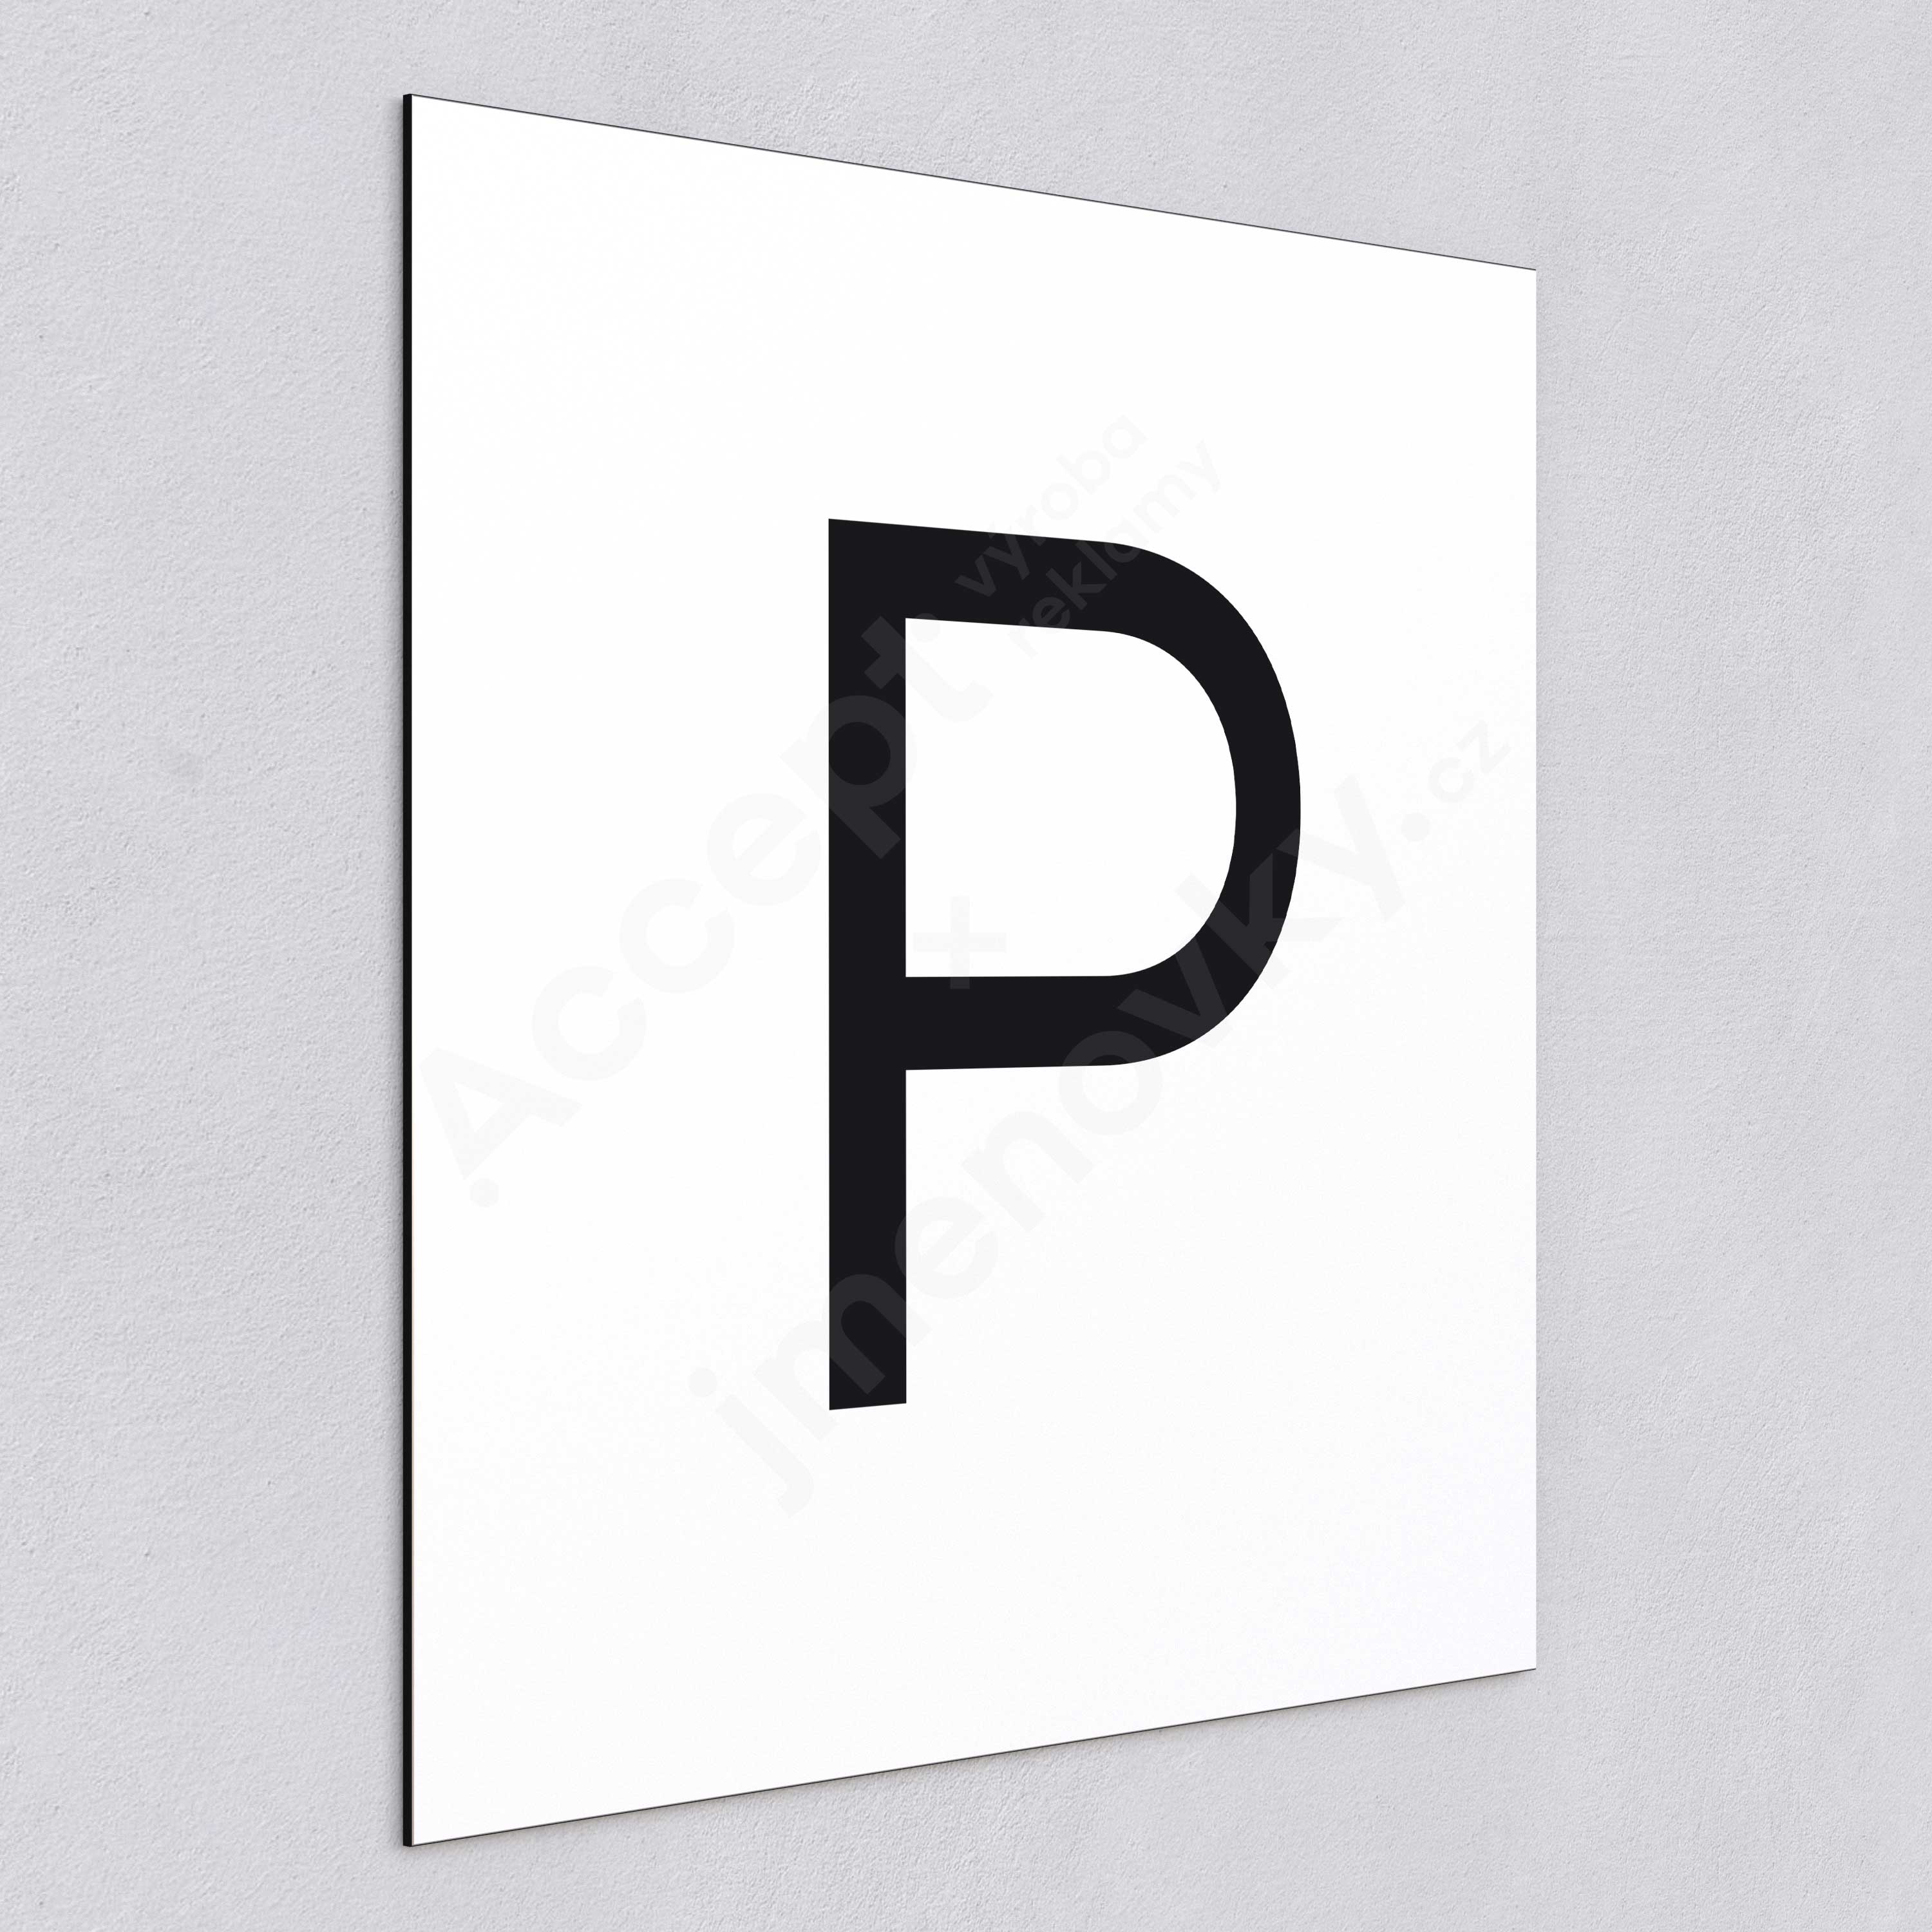 ACCEPT Označení podlaží - písmeno "P" (300 x 300 mm) - bílá tabulka - černý popis